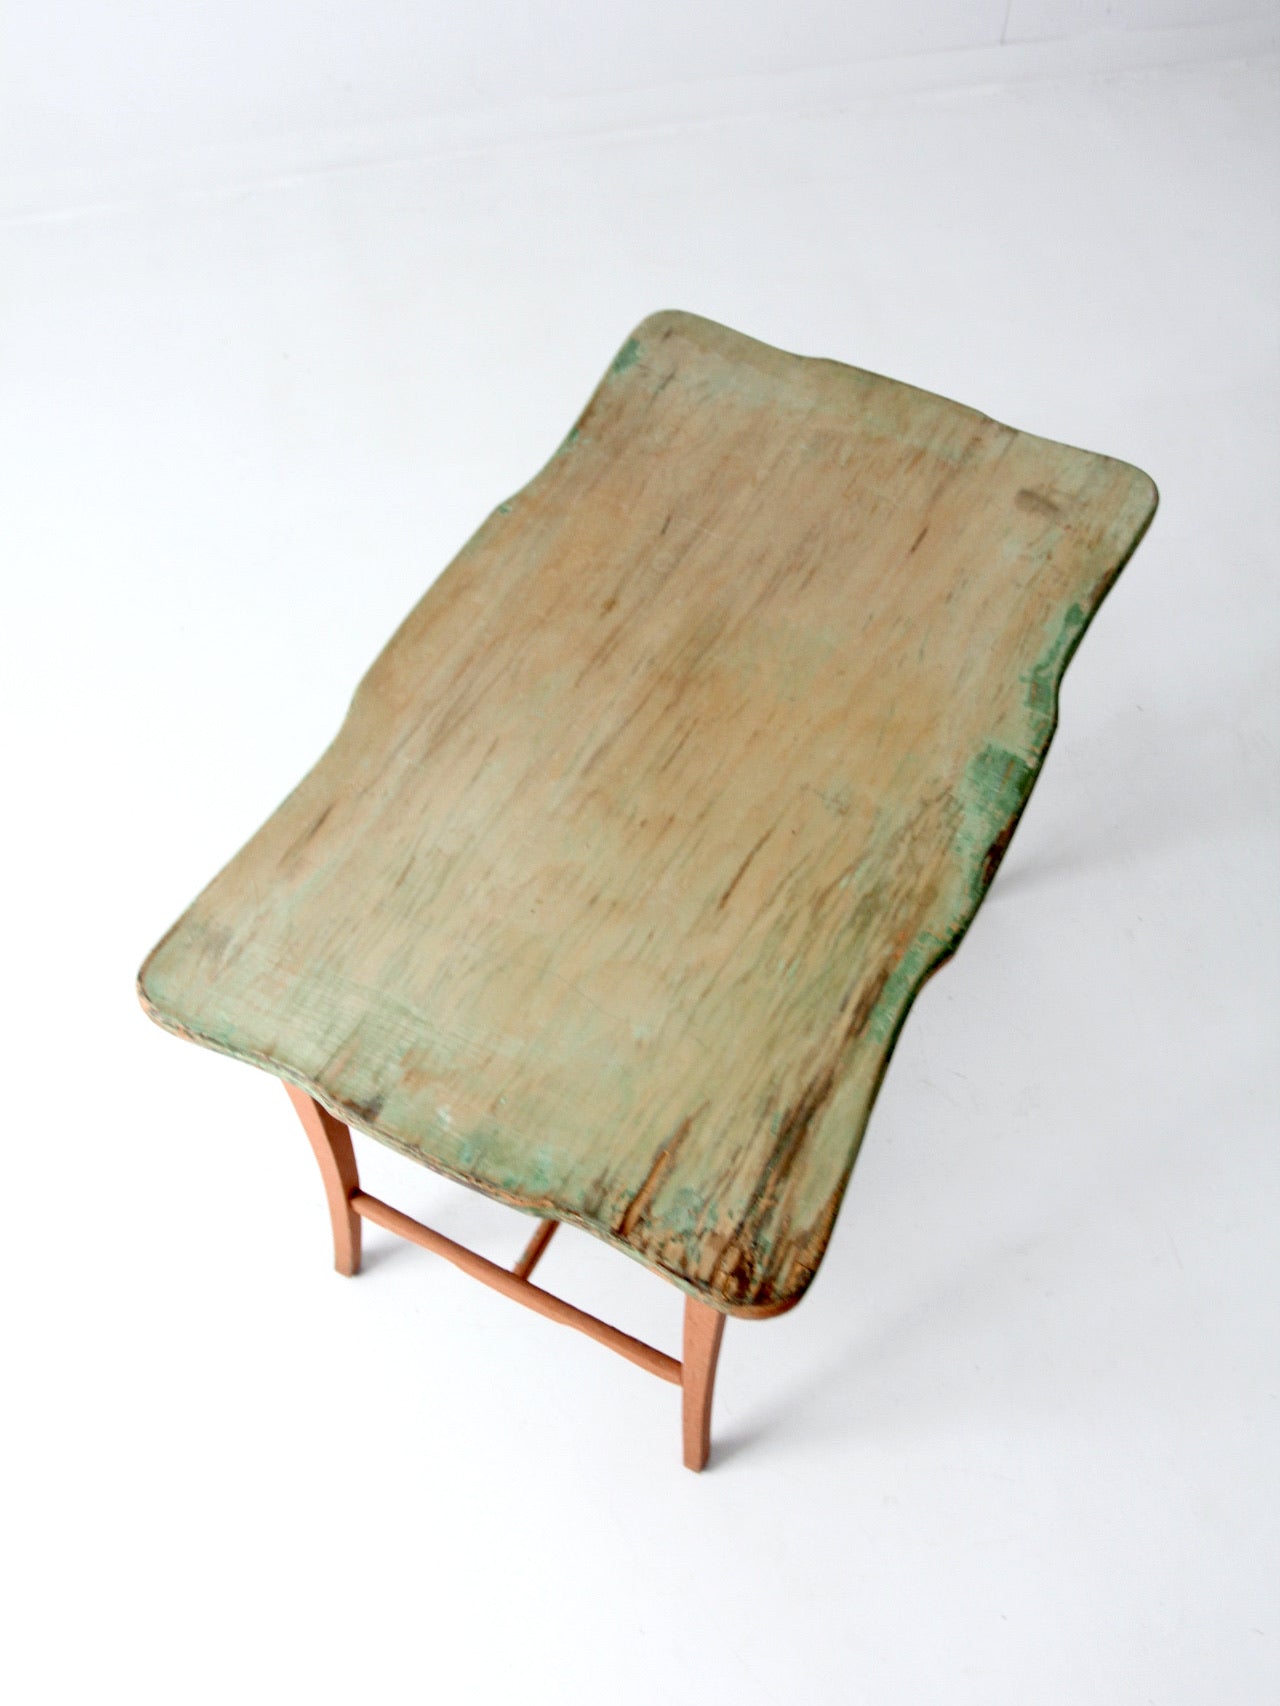 antique Karpen Furniture side table